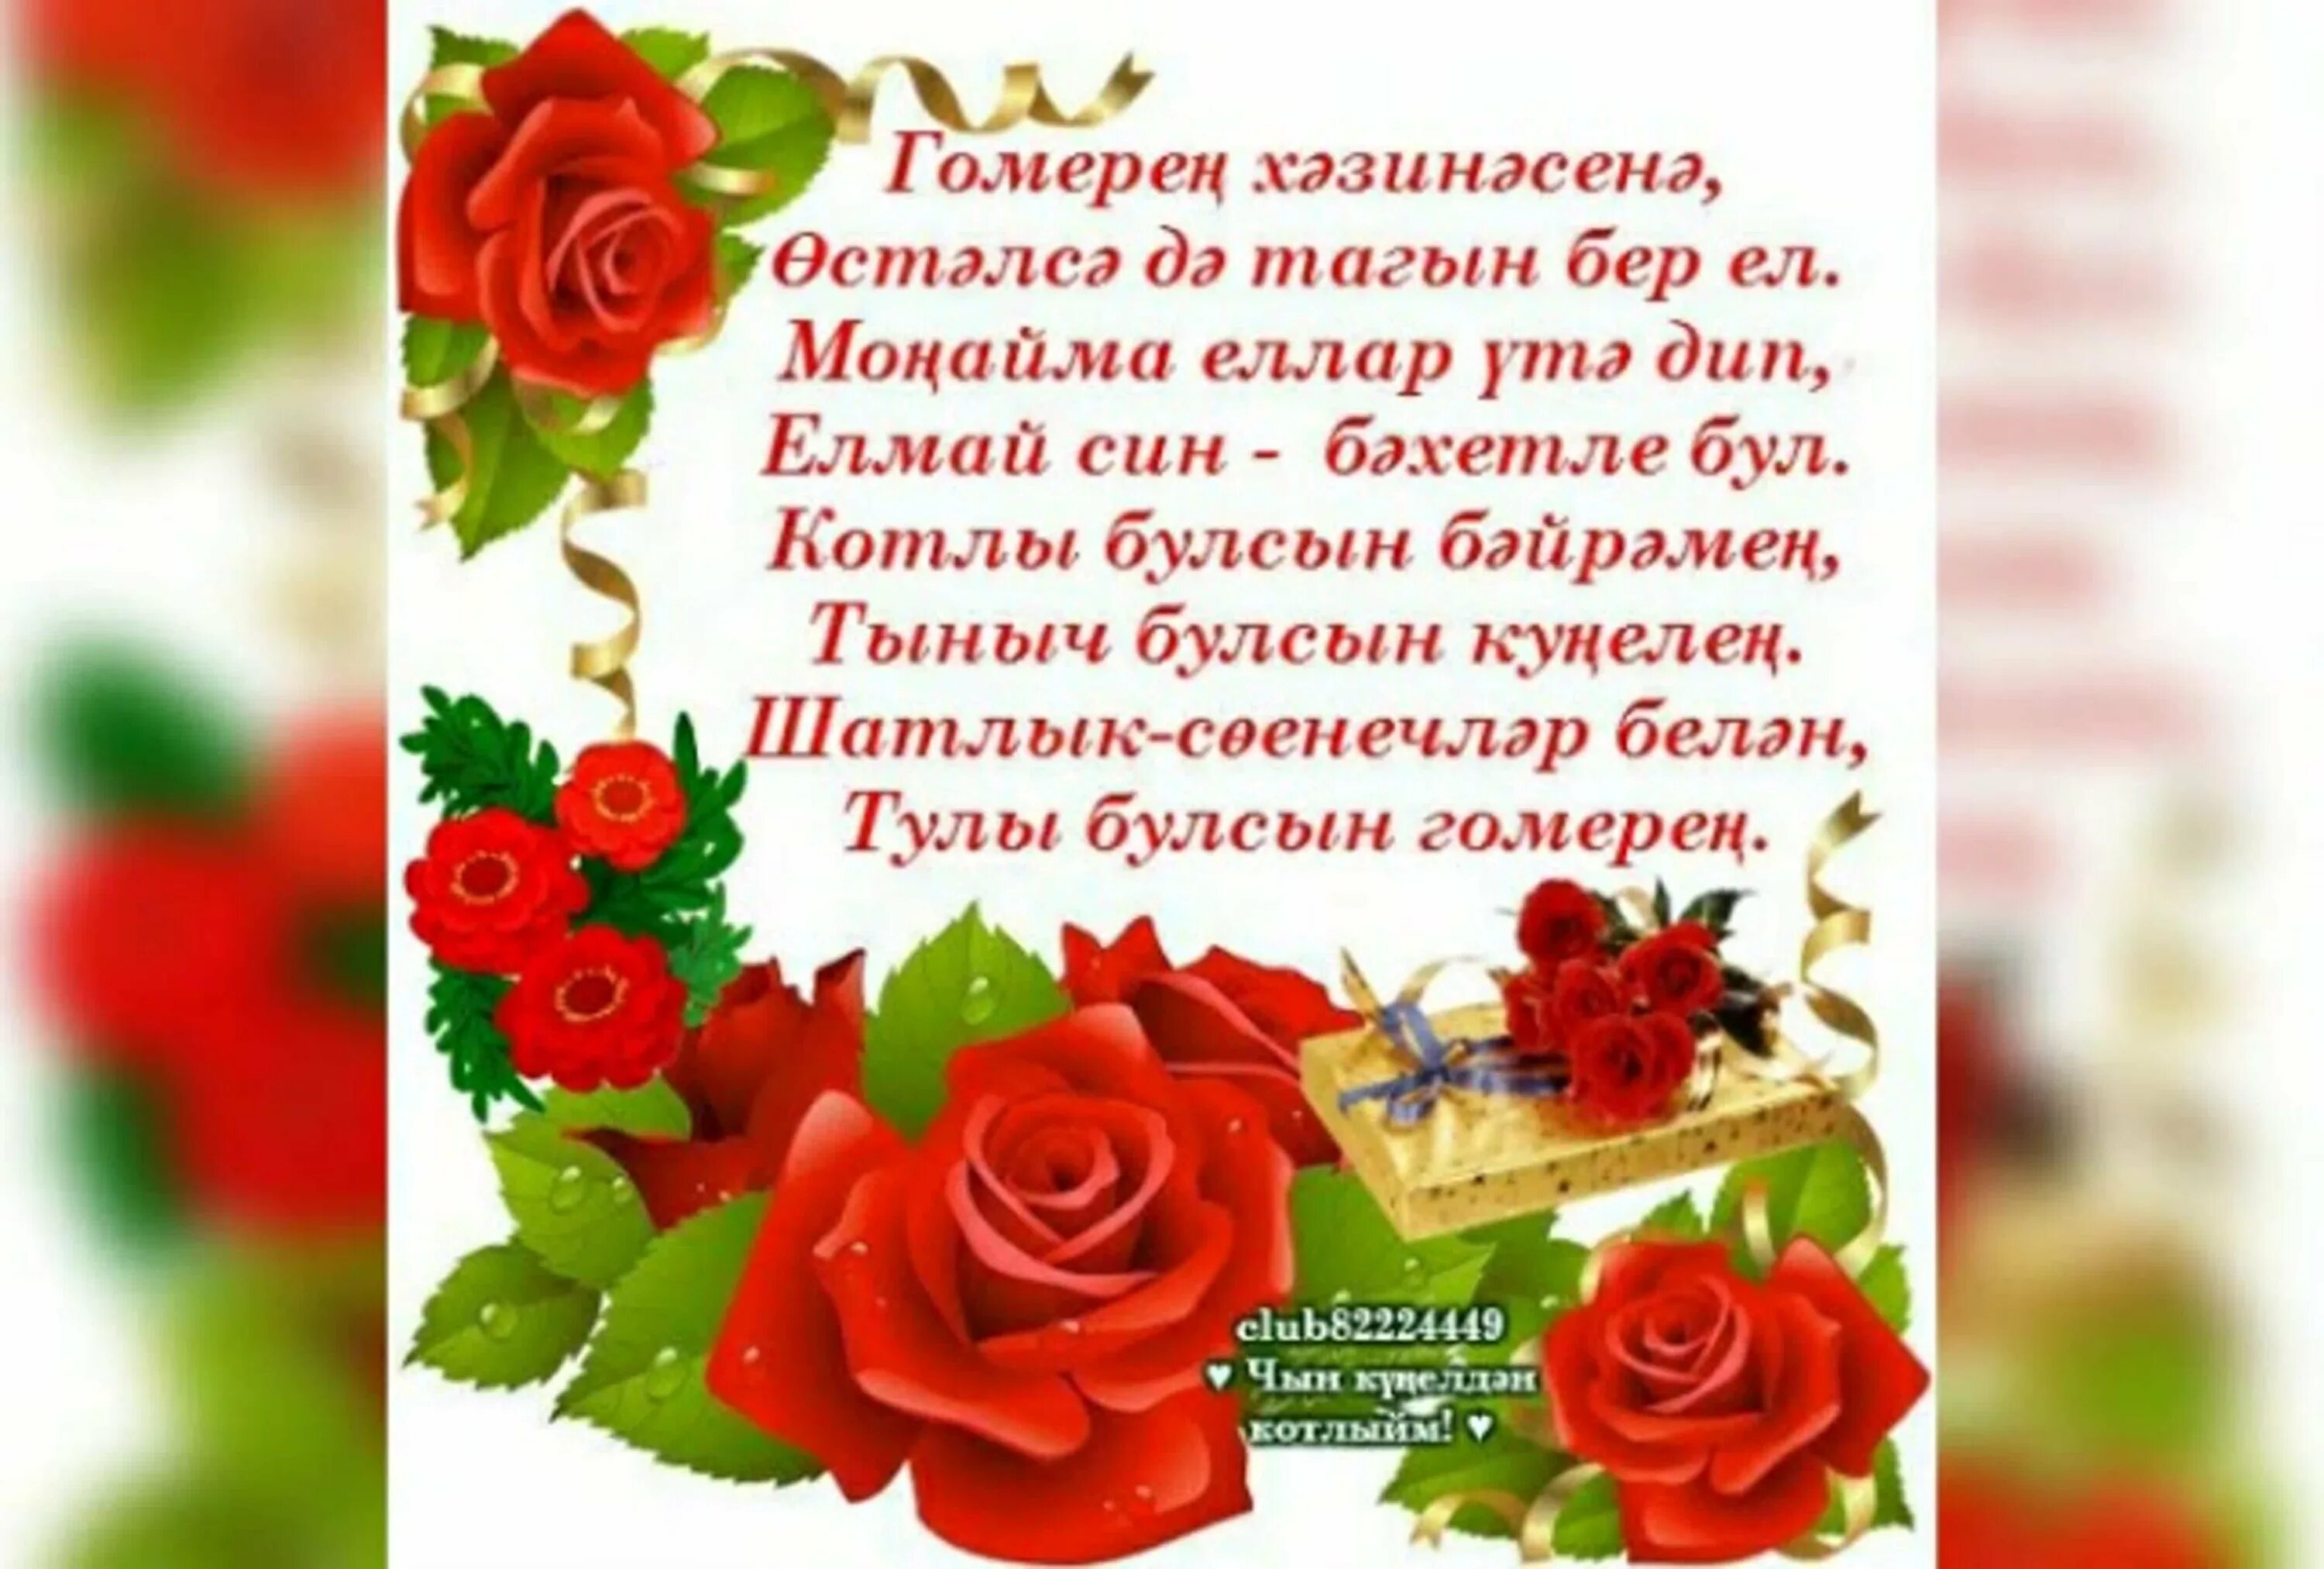 Поздравление туган конен. Поздравления с днём рождения на татарском языке. Поздравление на татарском языке. Татарские поздравления с днем рождения. Поздравления с днём рождения женщине на татарском языке.